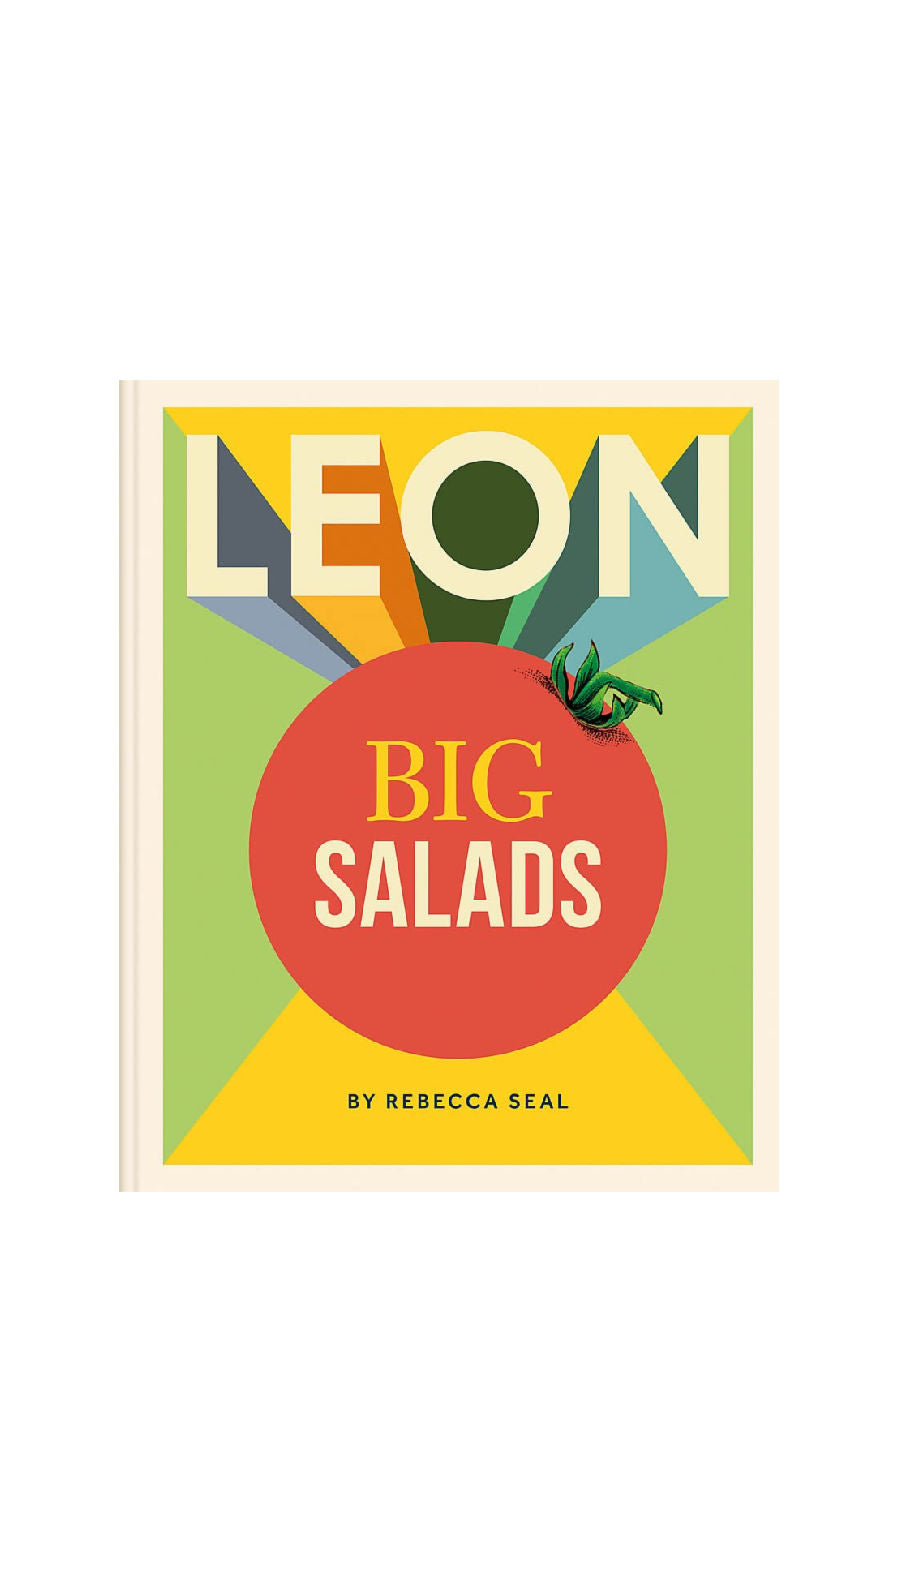 Leon: Big Salads